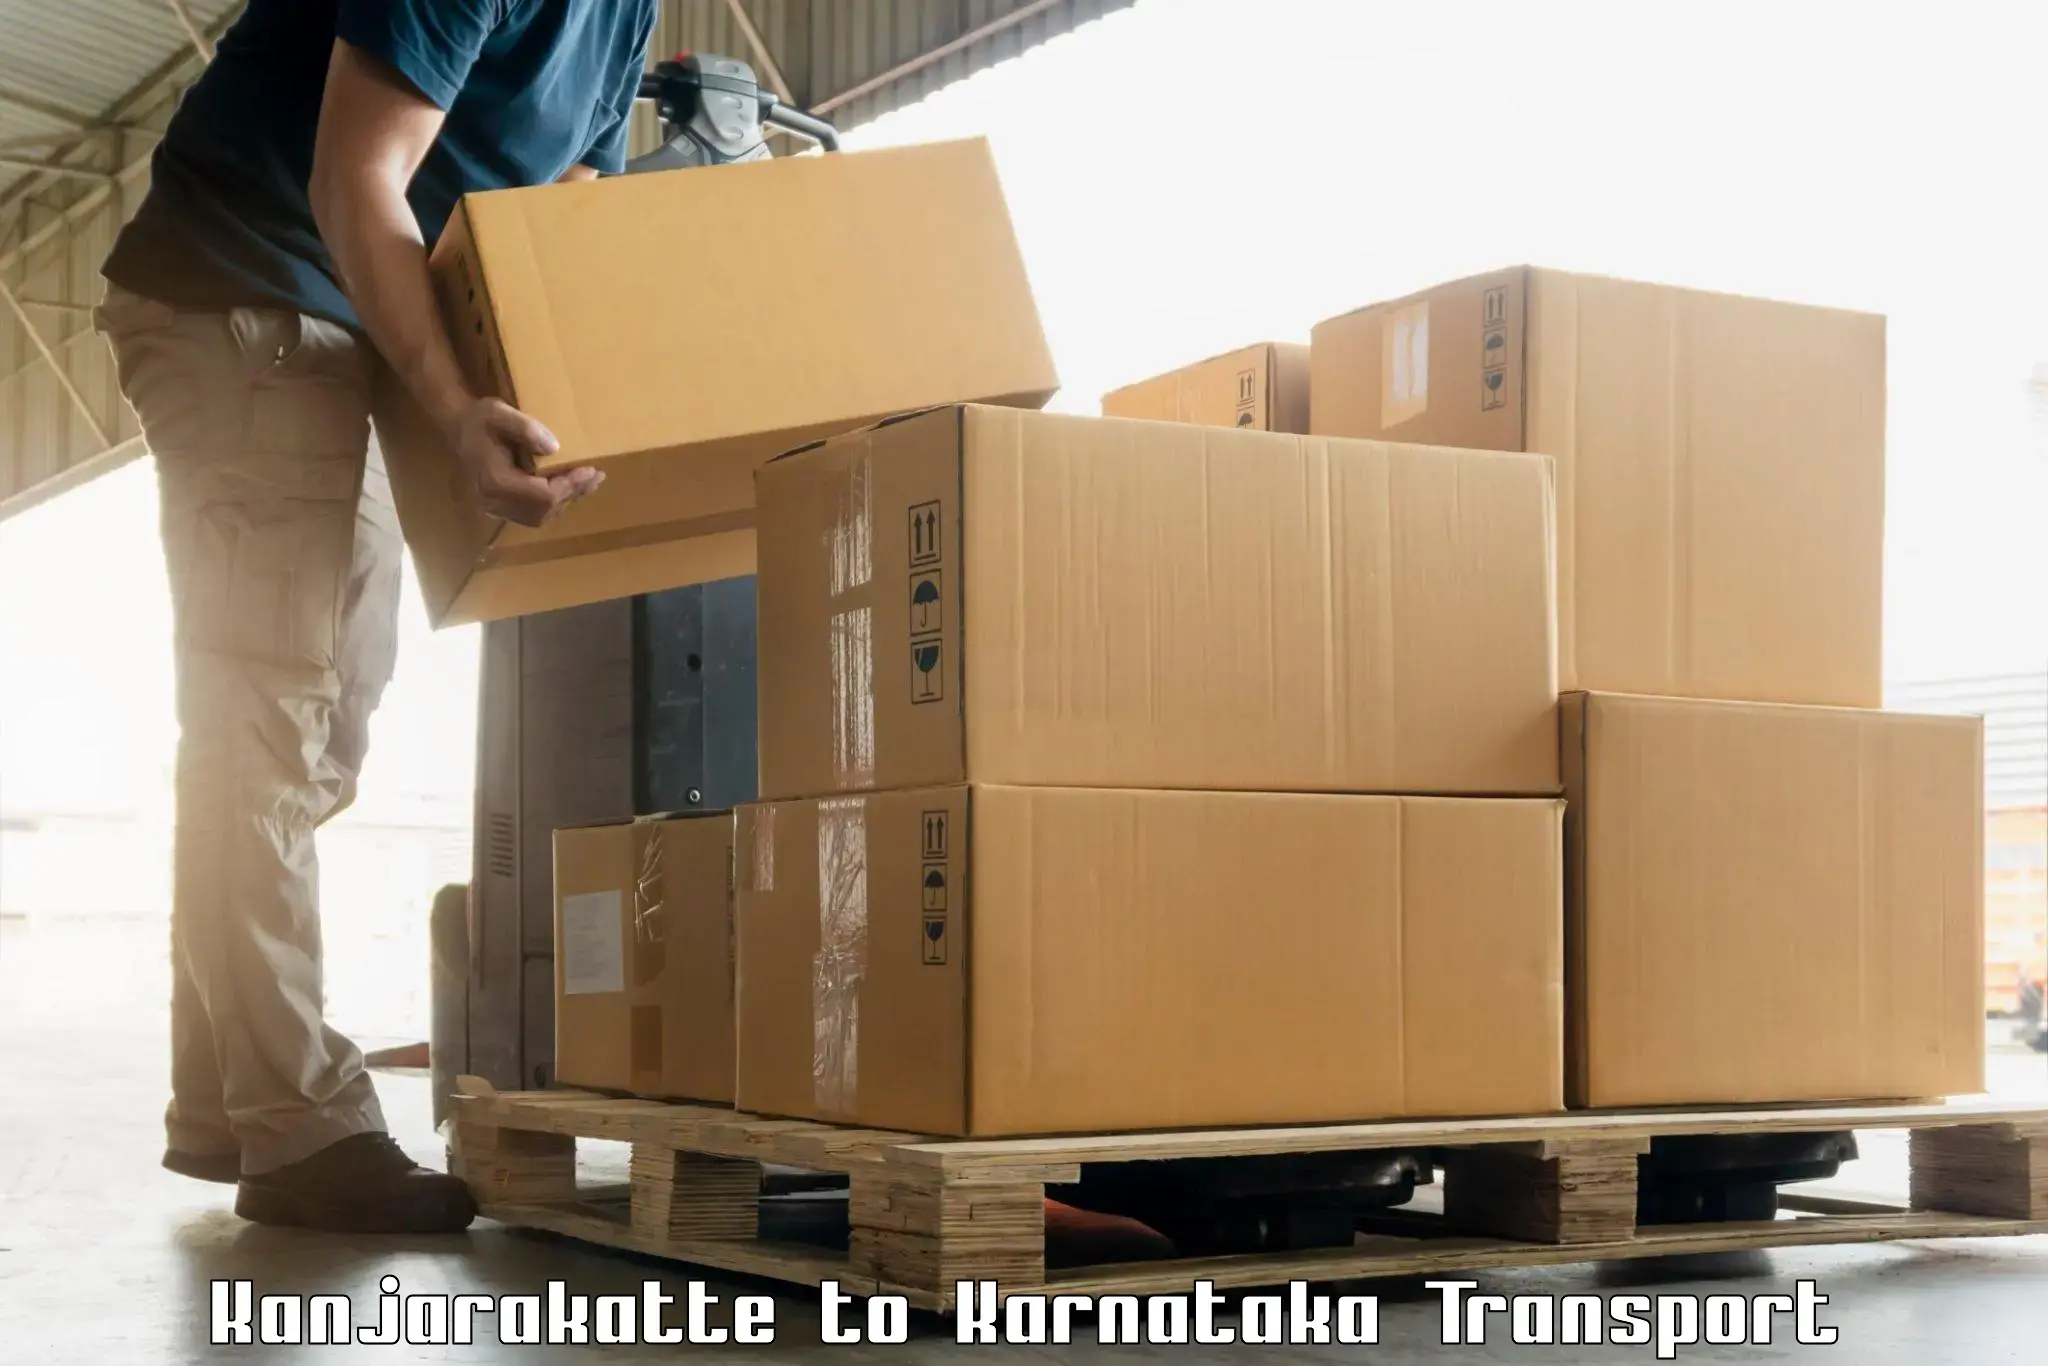 Cargo transport services Kanjarakatte to Karnataka